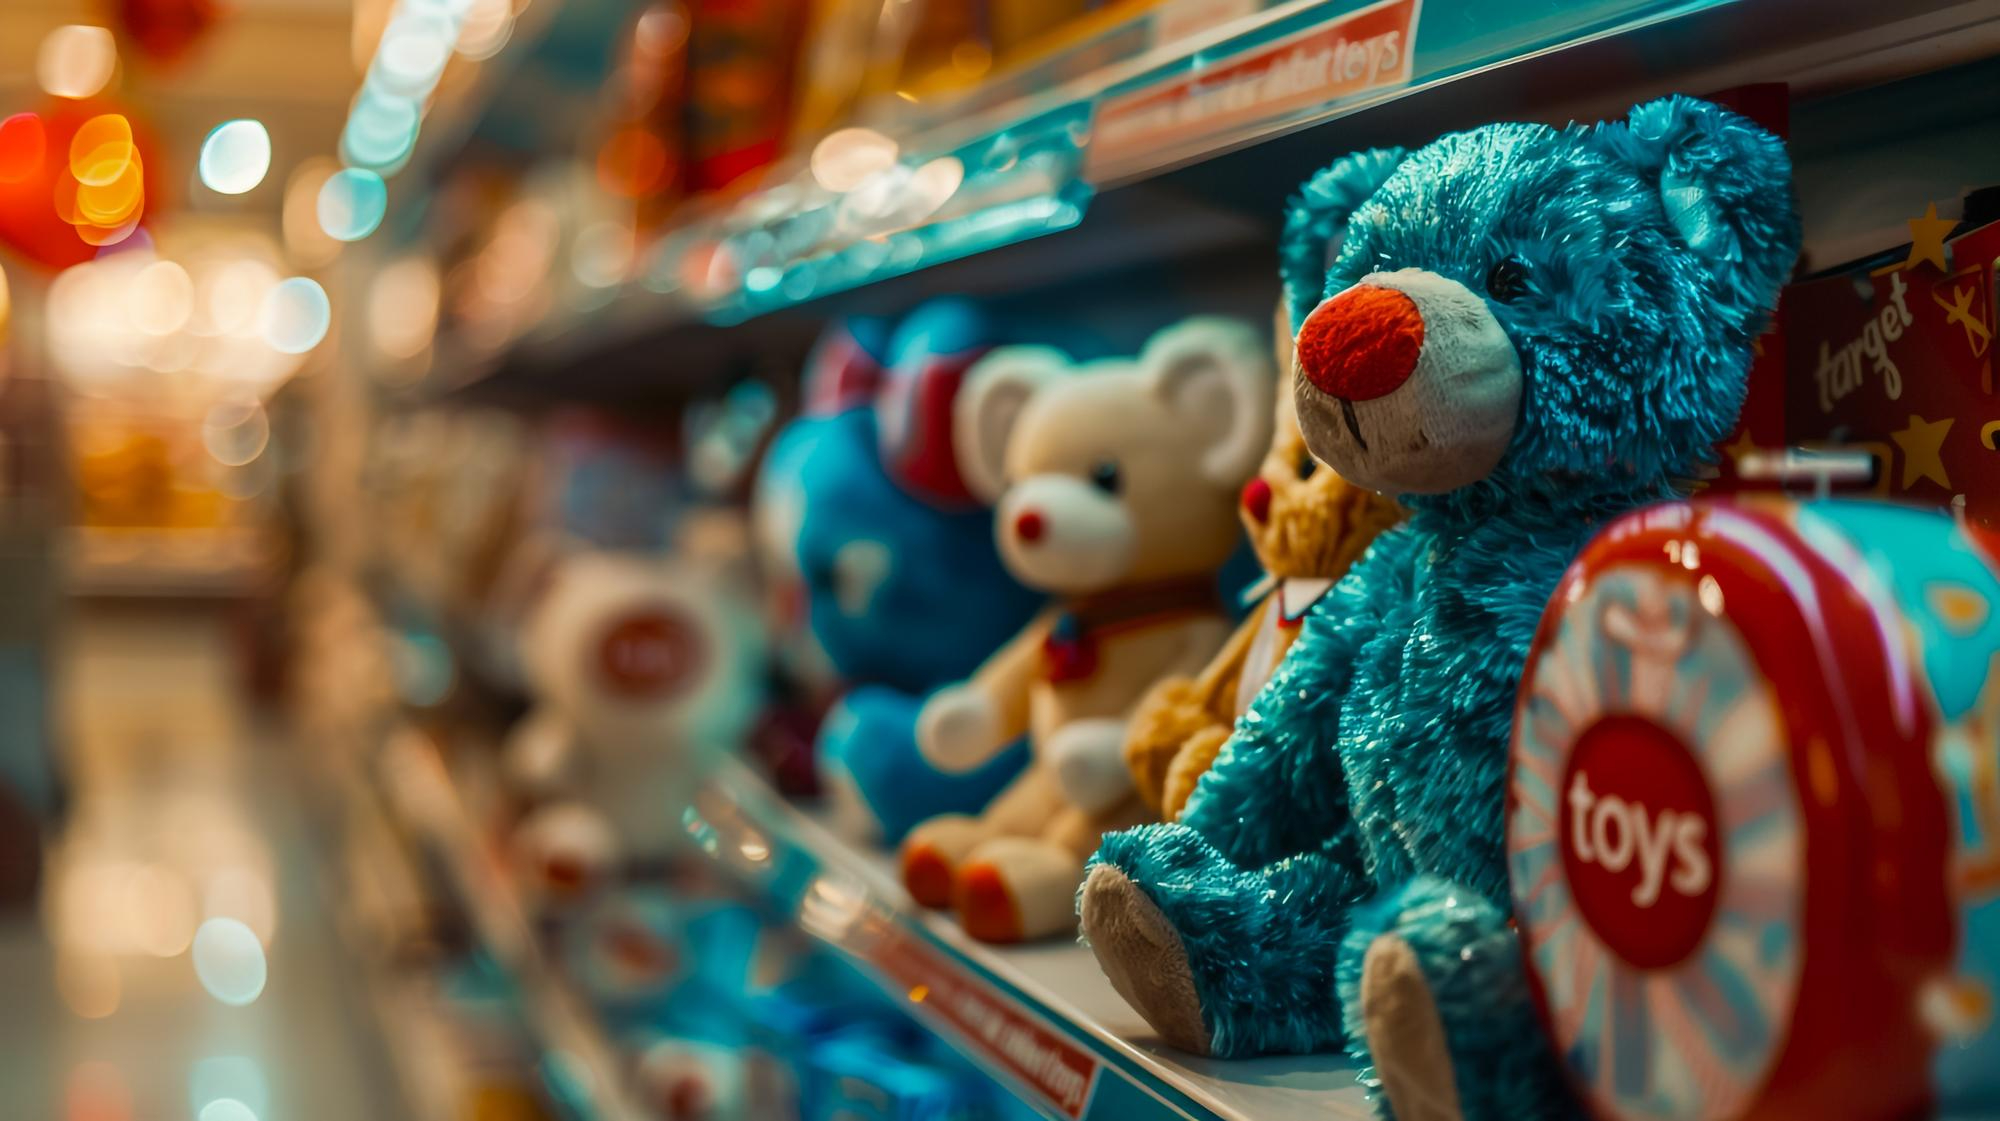 Rifornire un negozio di giocattoli - come farlo?